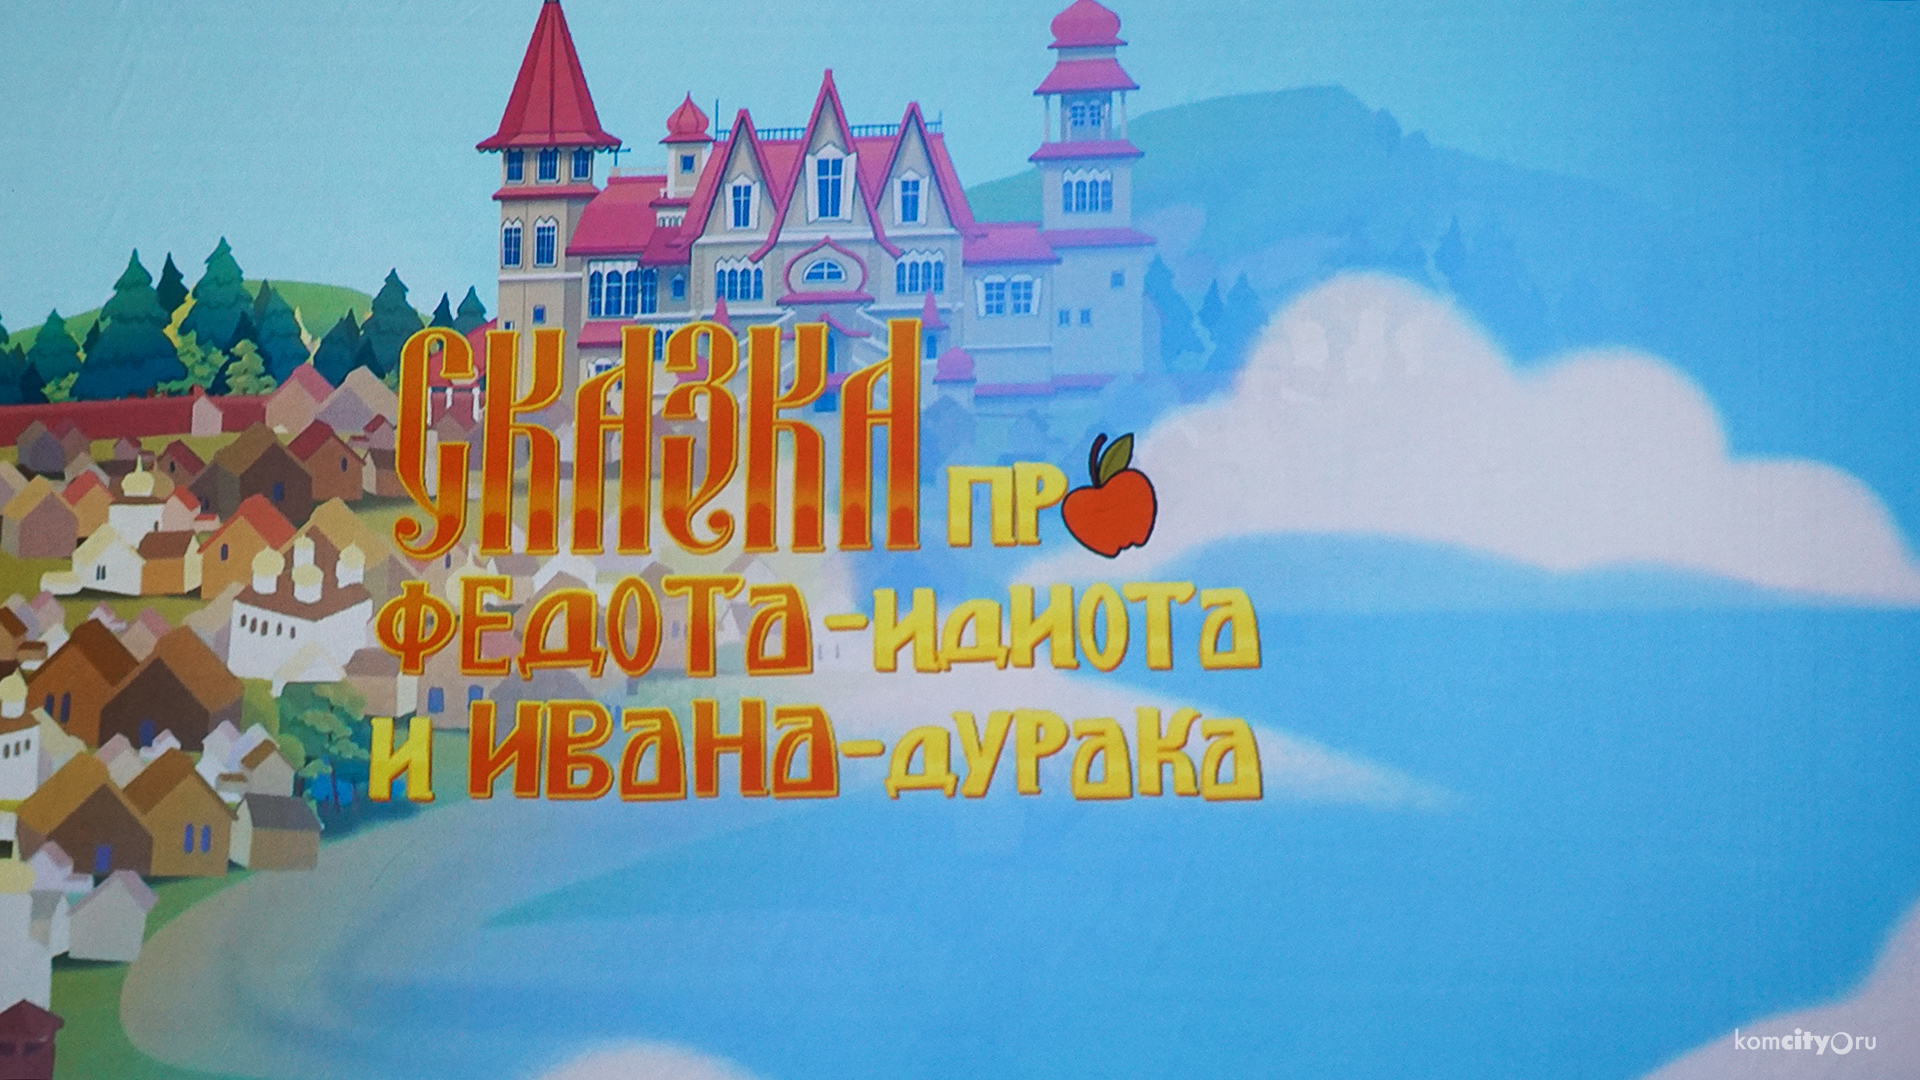 Про Федота-идиота и Ивана-дурака: Комсомольские аниматоры представят премьеру полуторачасового мультфильма в Доме молодёжи